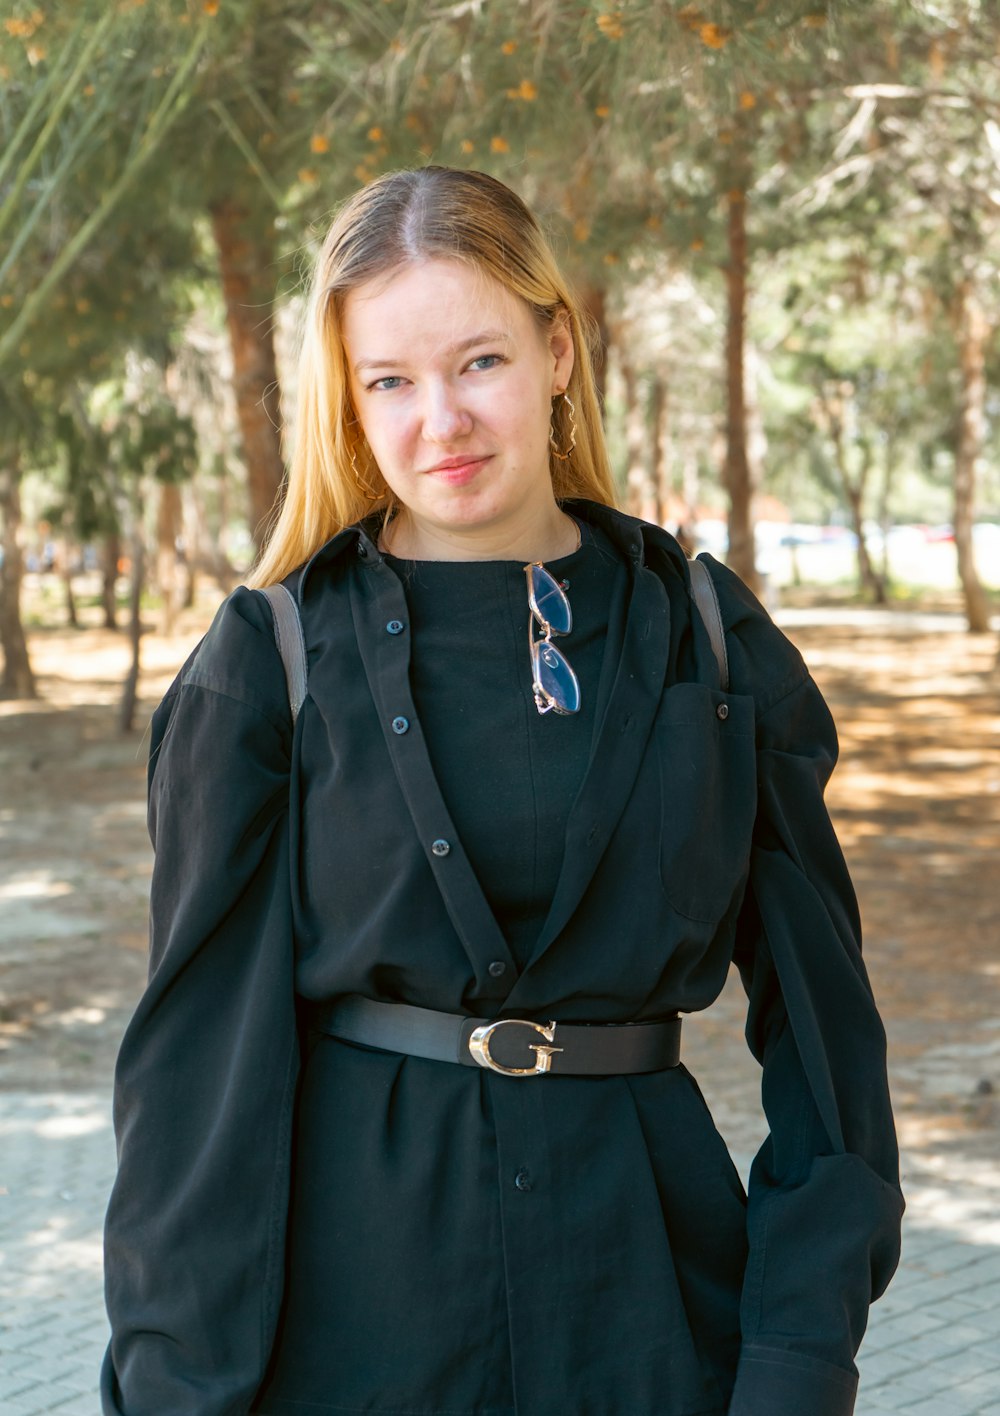 Una mujer con un vestido negro y una chaqueta posando para una foto